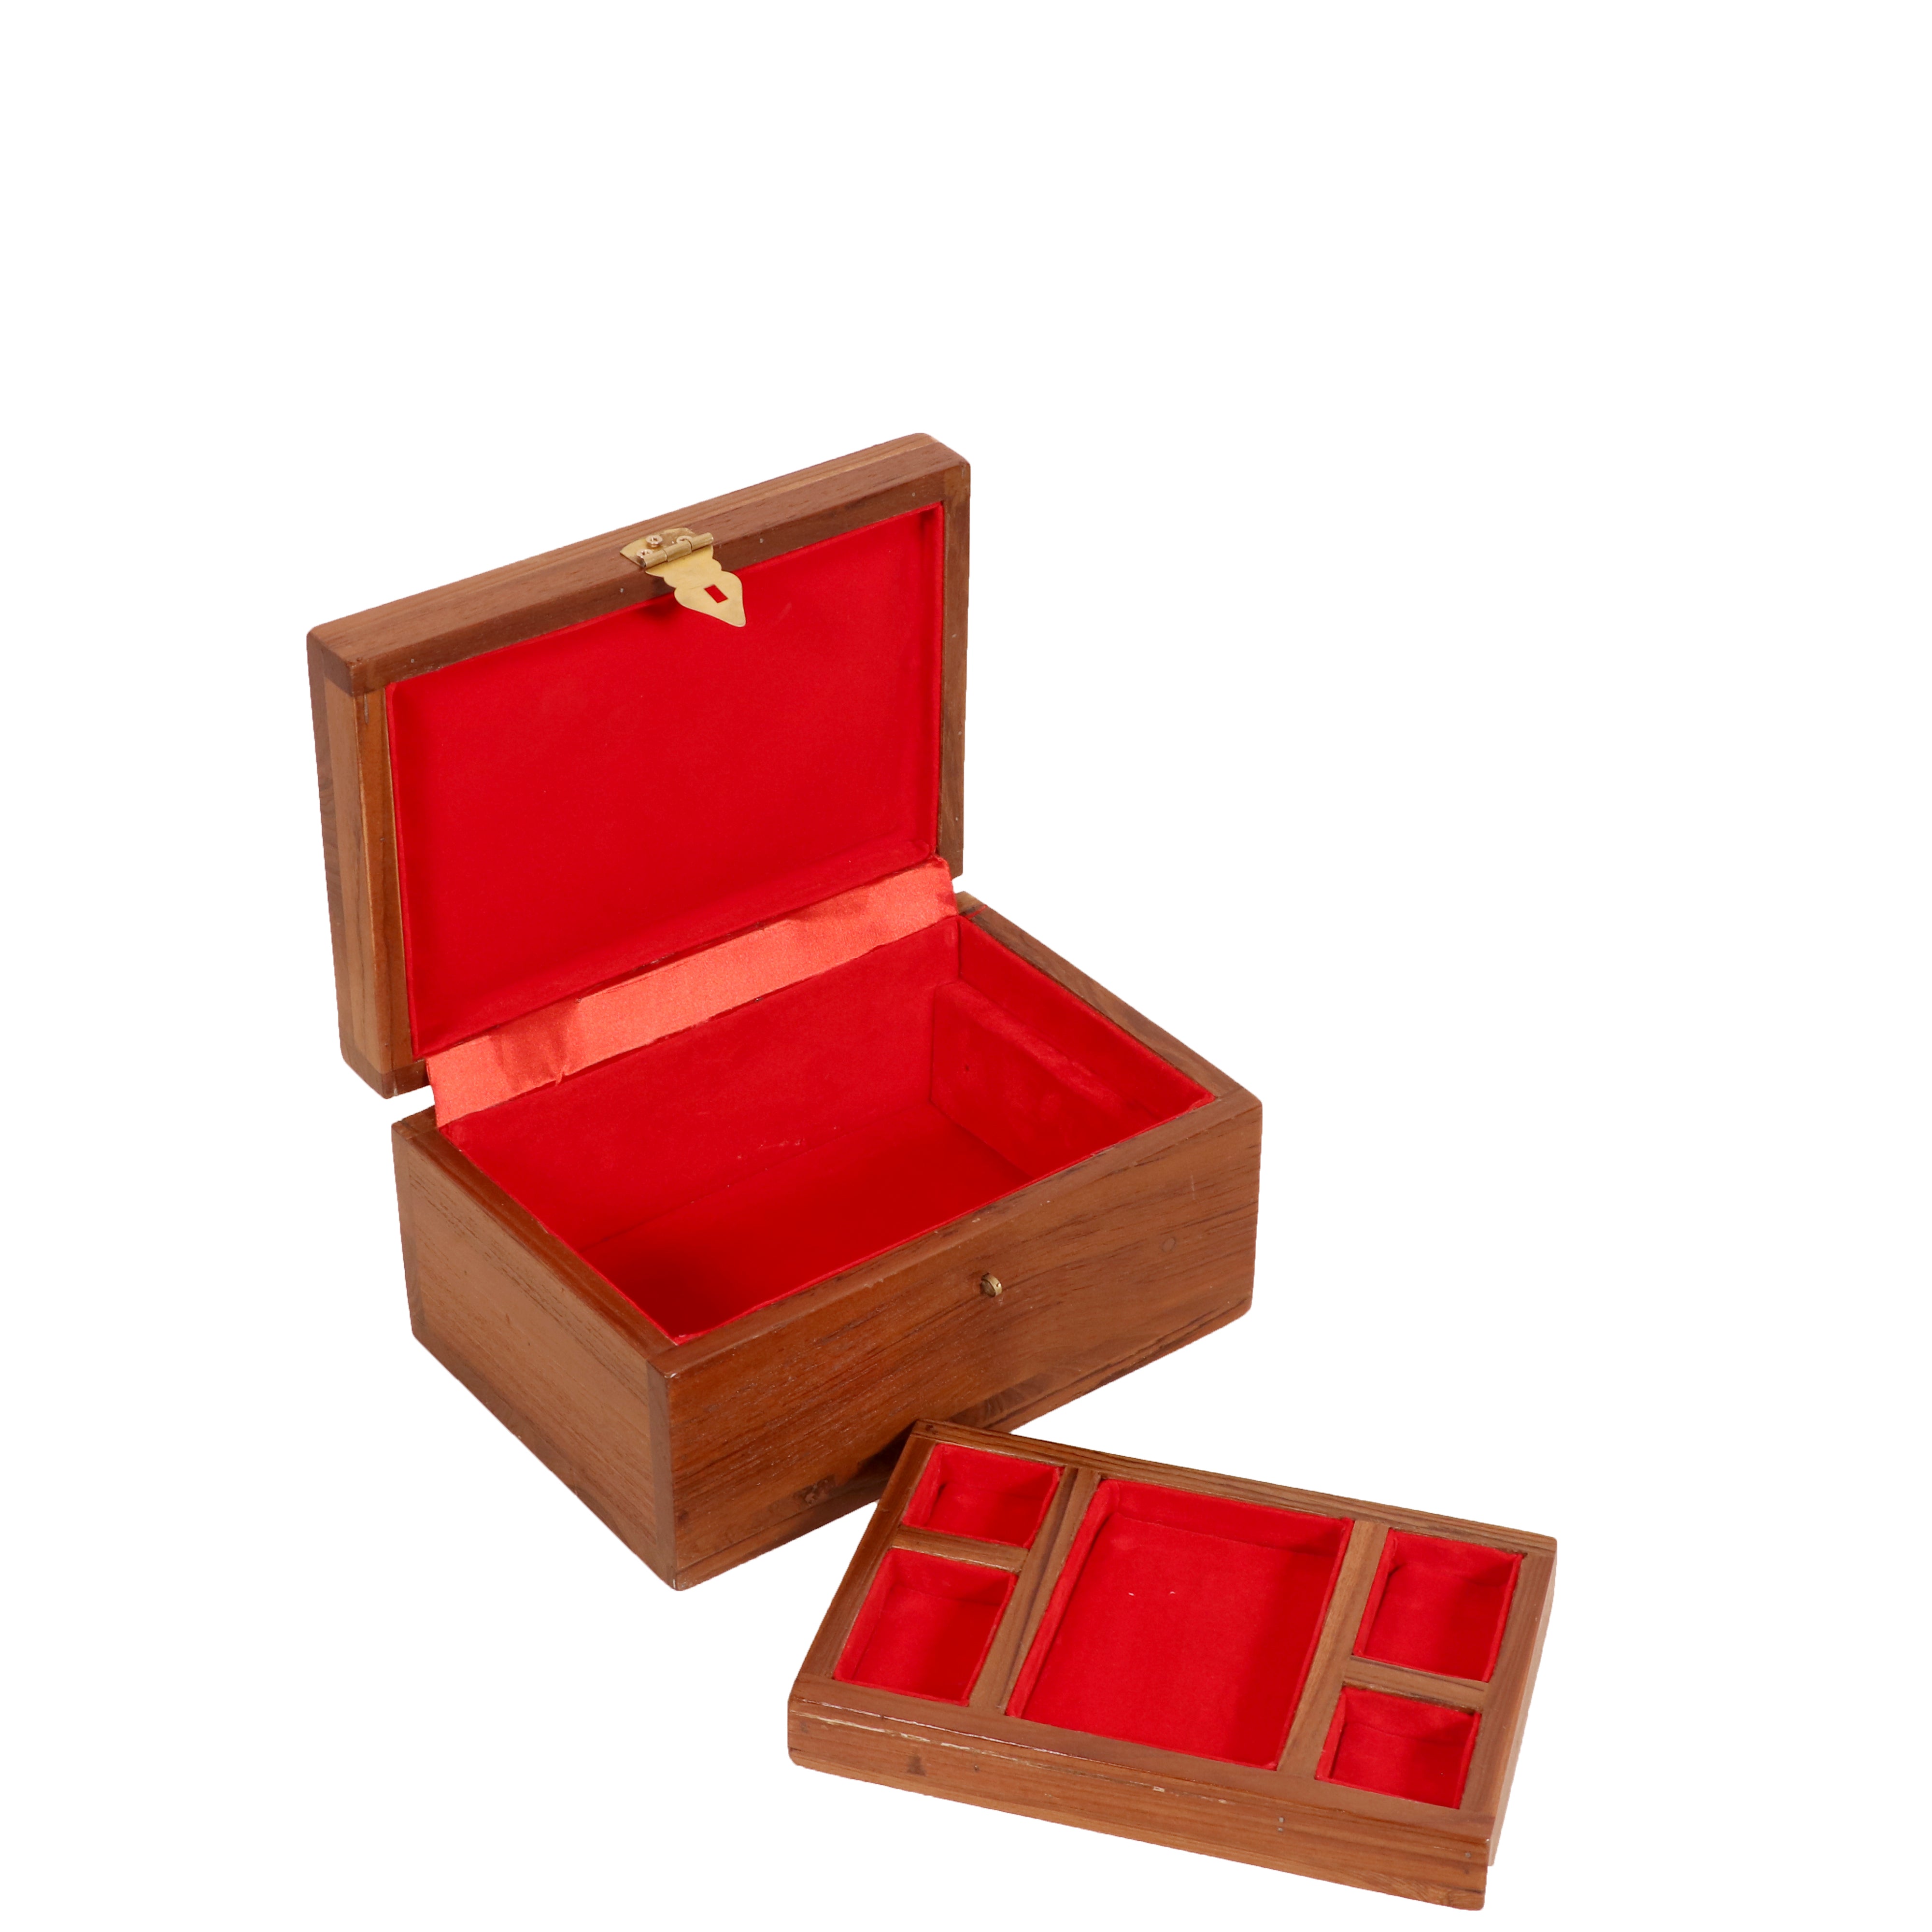 Classic teak multi compartment jewelry box Wooden Box